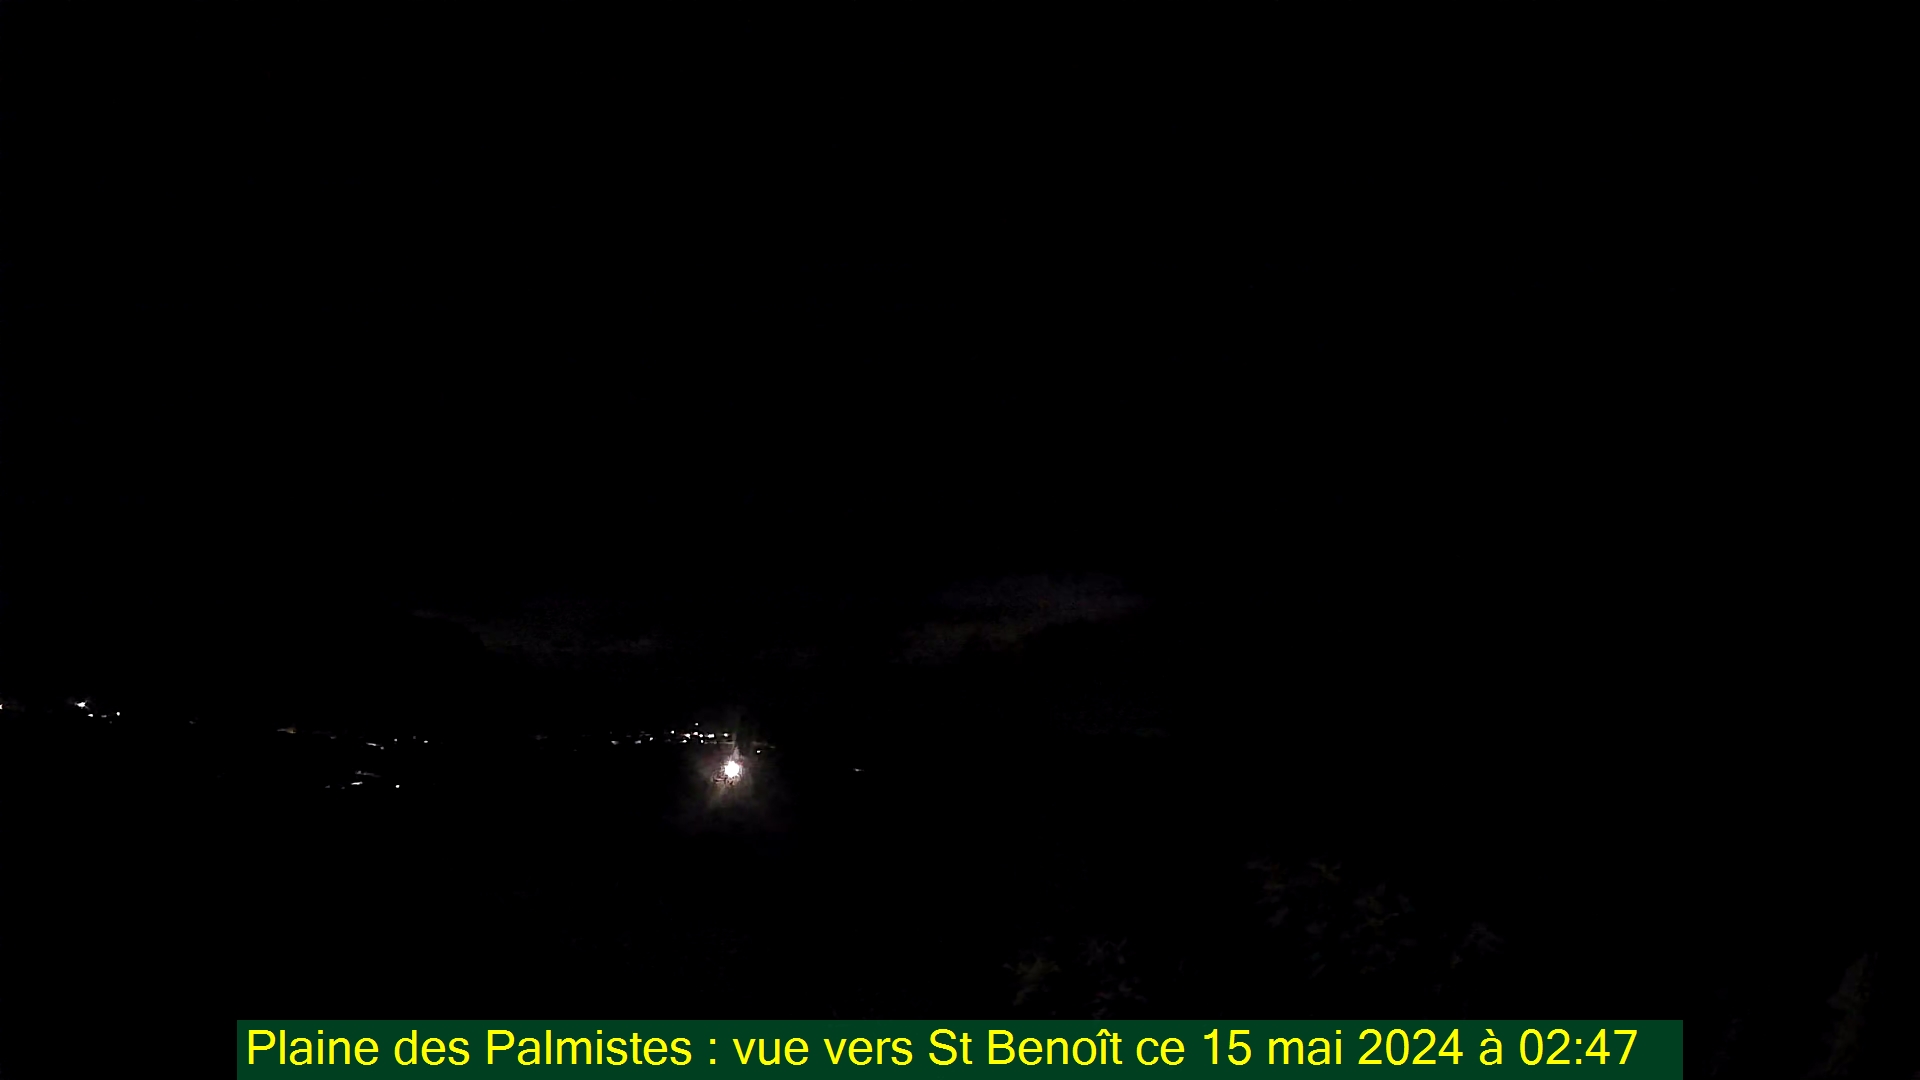 Saint-Denis (Réunion) Do. 02:50